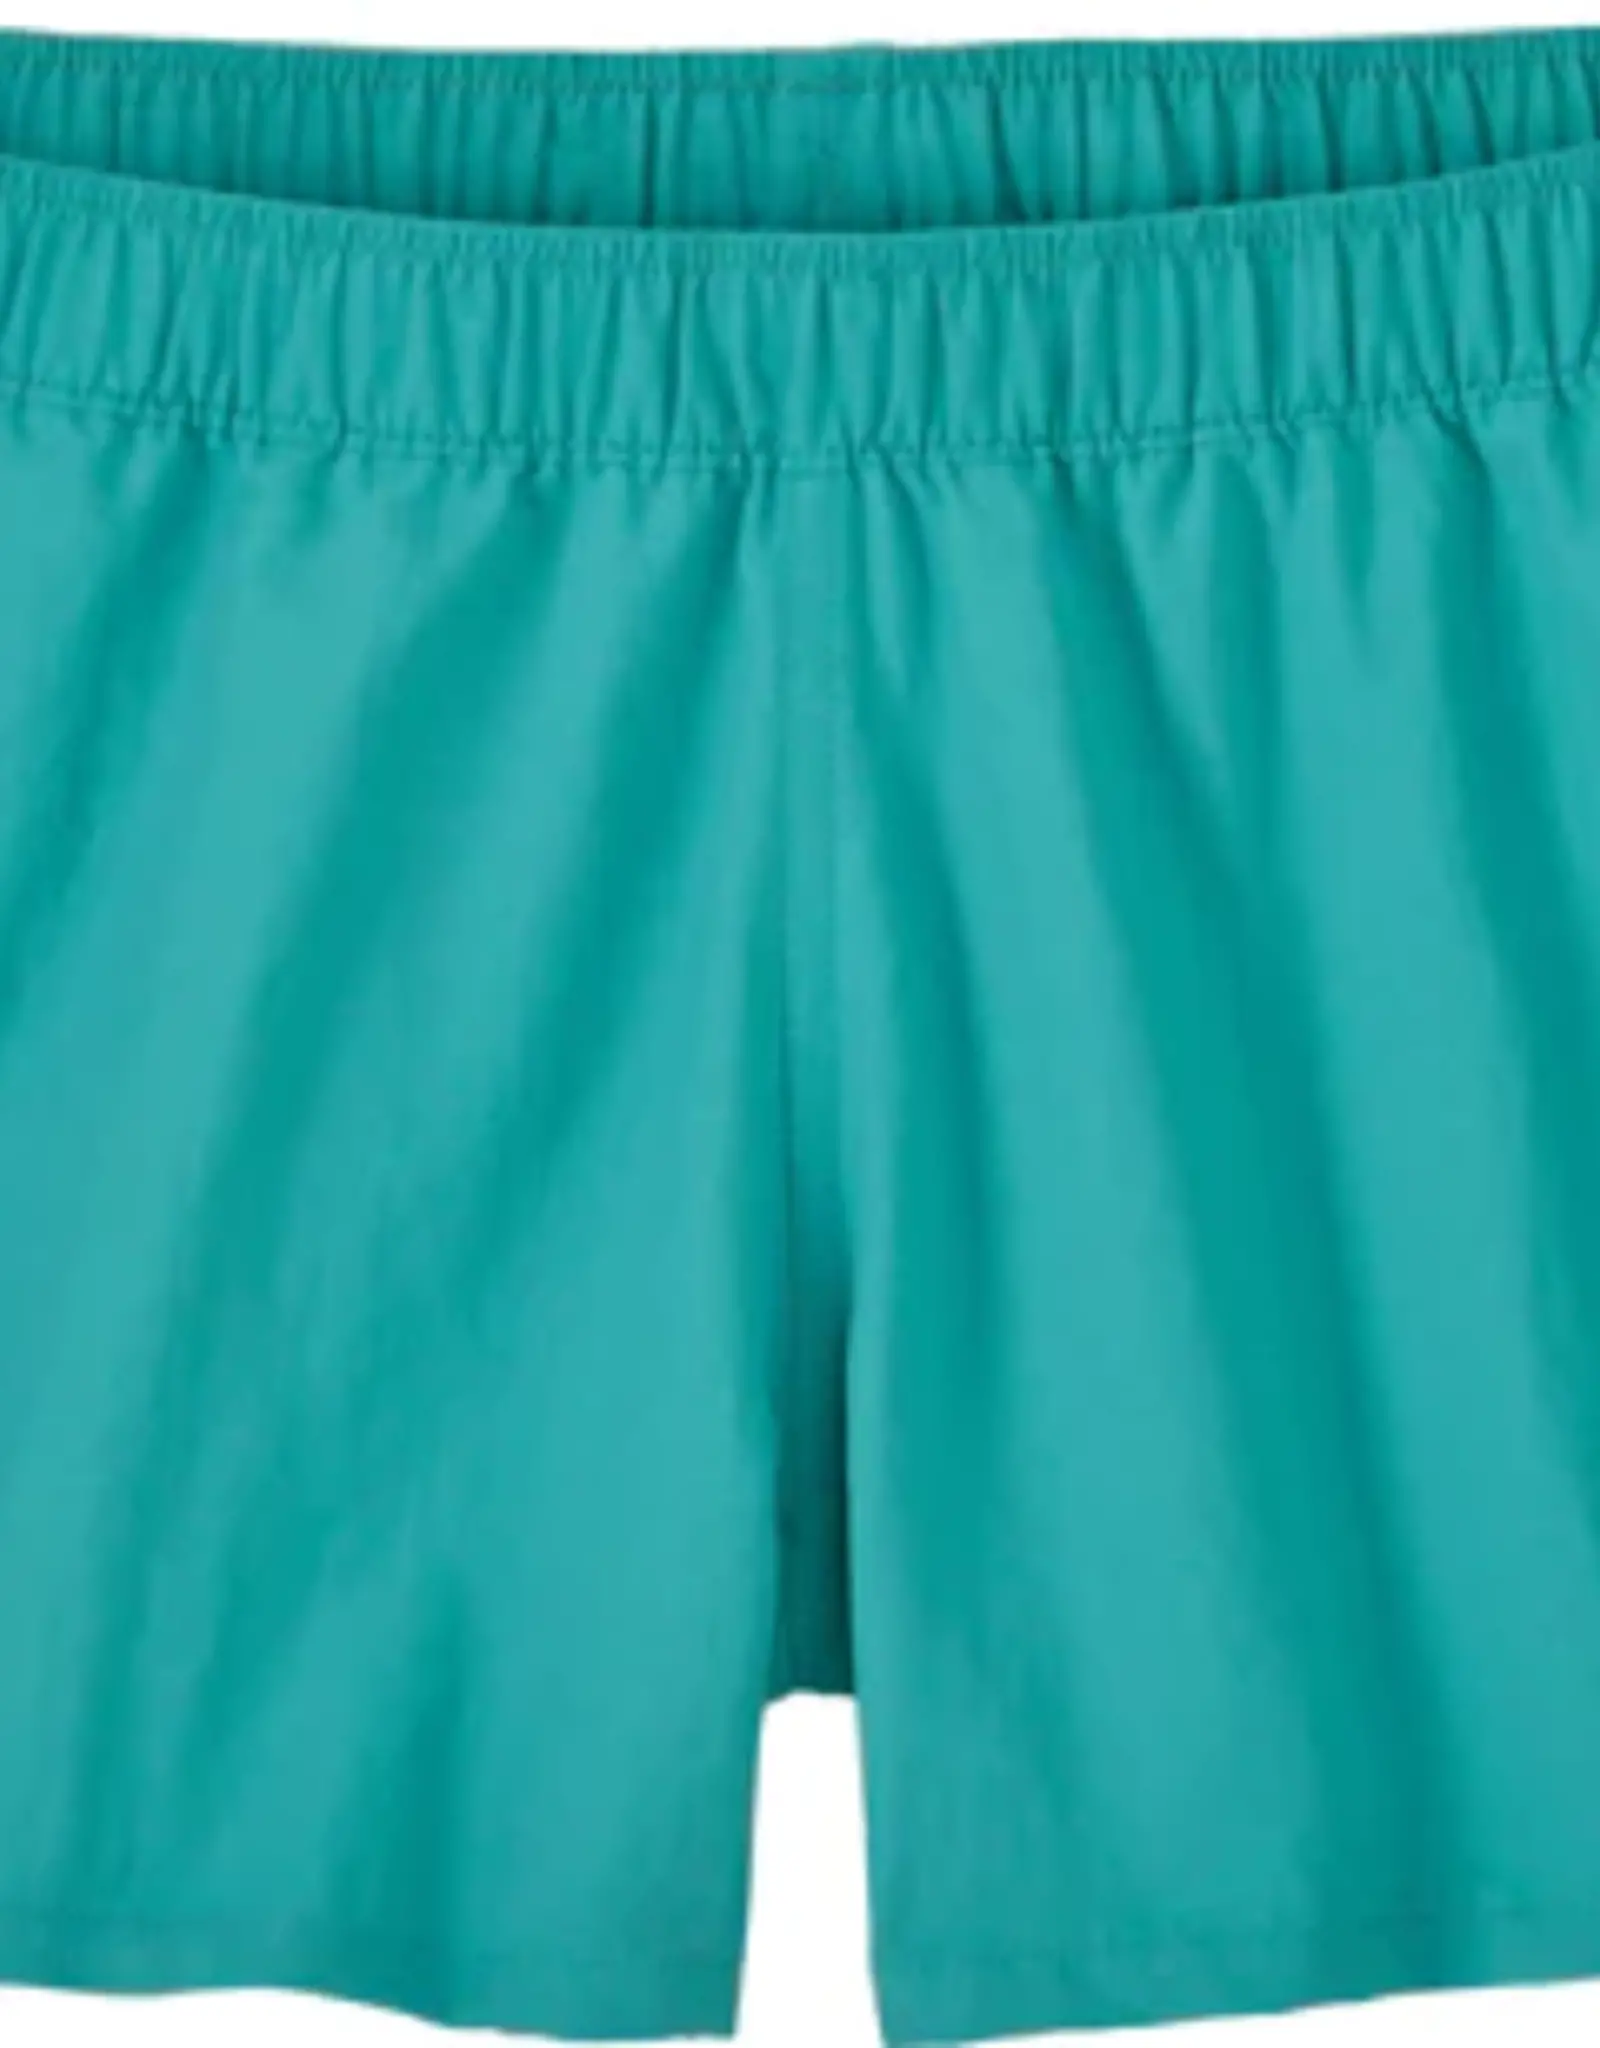 Patagonia Patagonia Women's Barely Baggies shorts - 2 1/2 inch